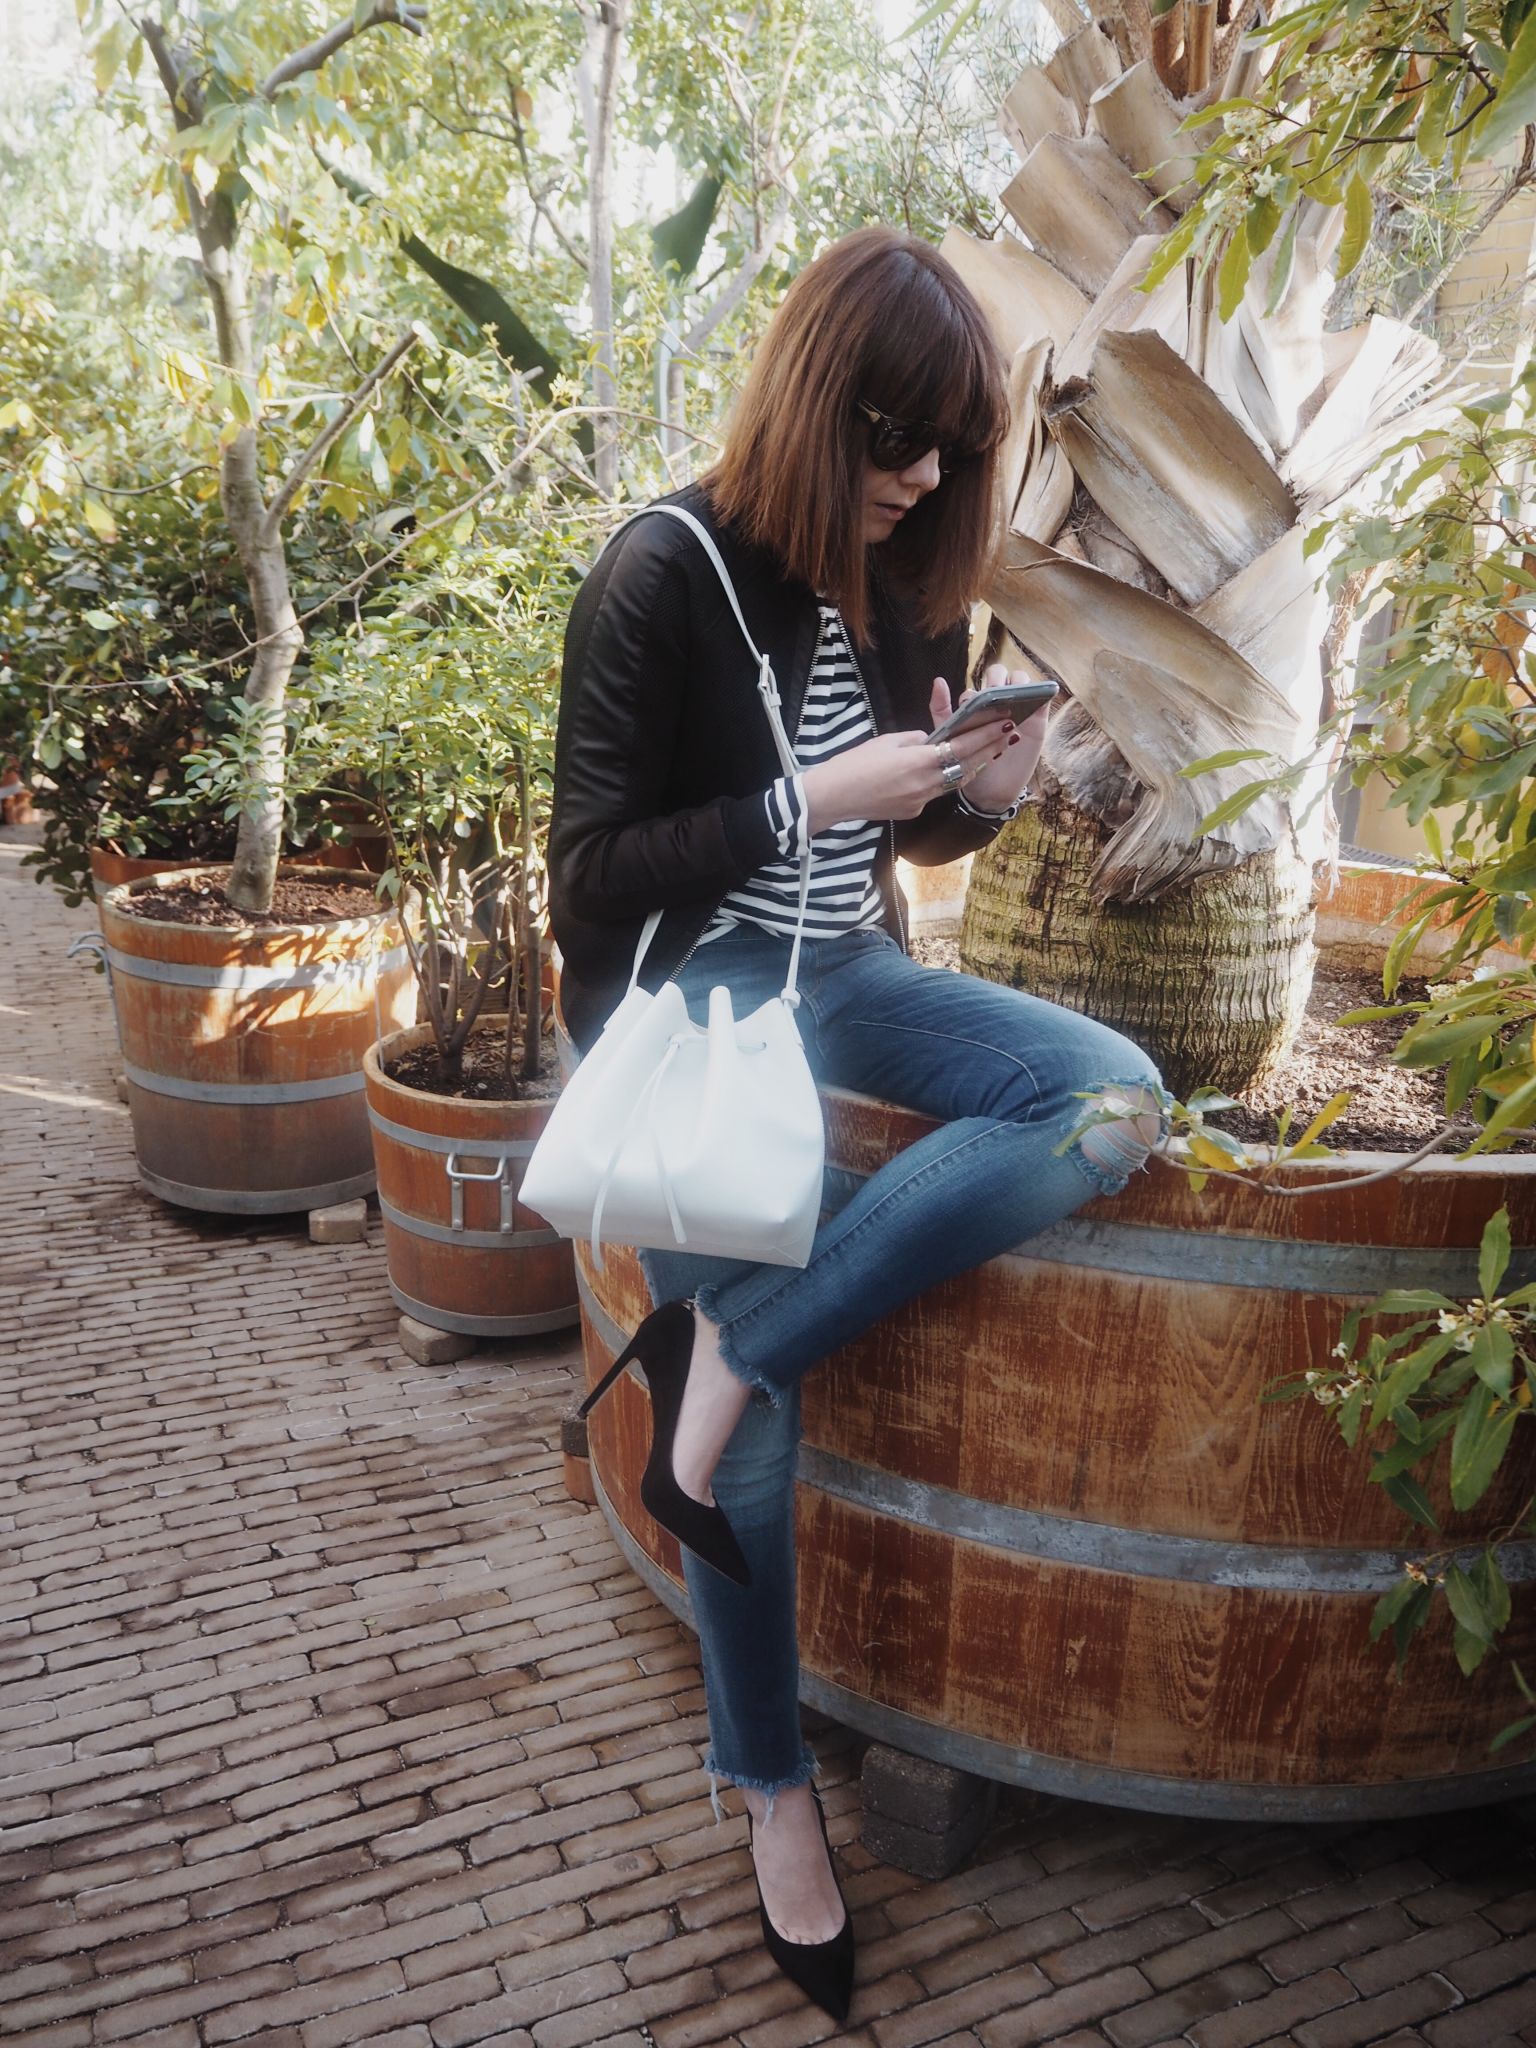 hortus-botanicus-amsterdam-bomber-jacket-otterbox-phone-case-iphone-stripes-bucket-bag-denim-heels-fashion-blogger